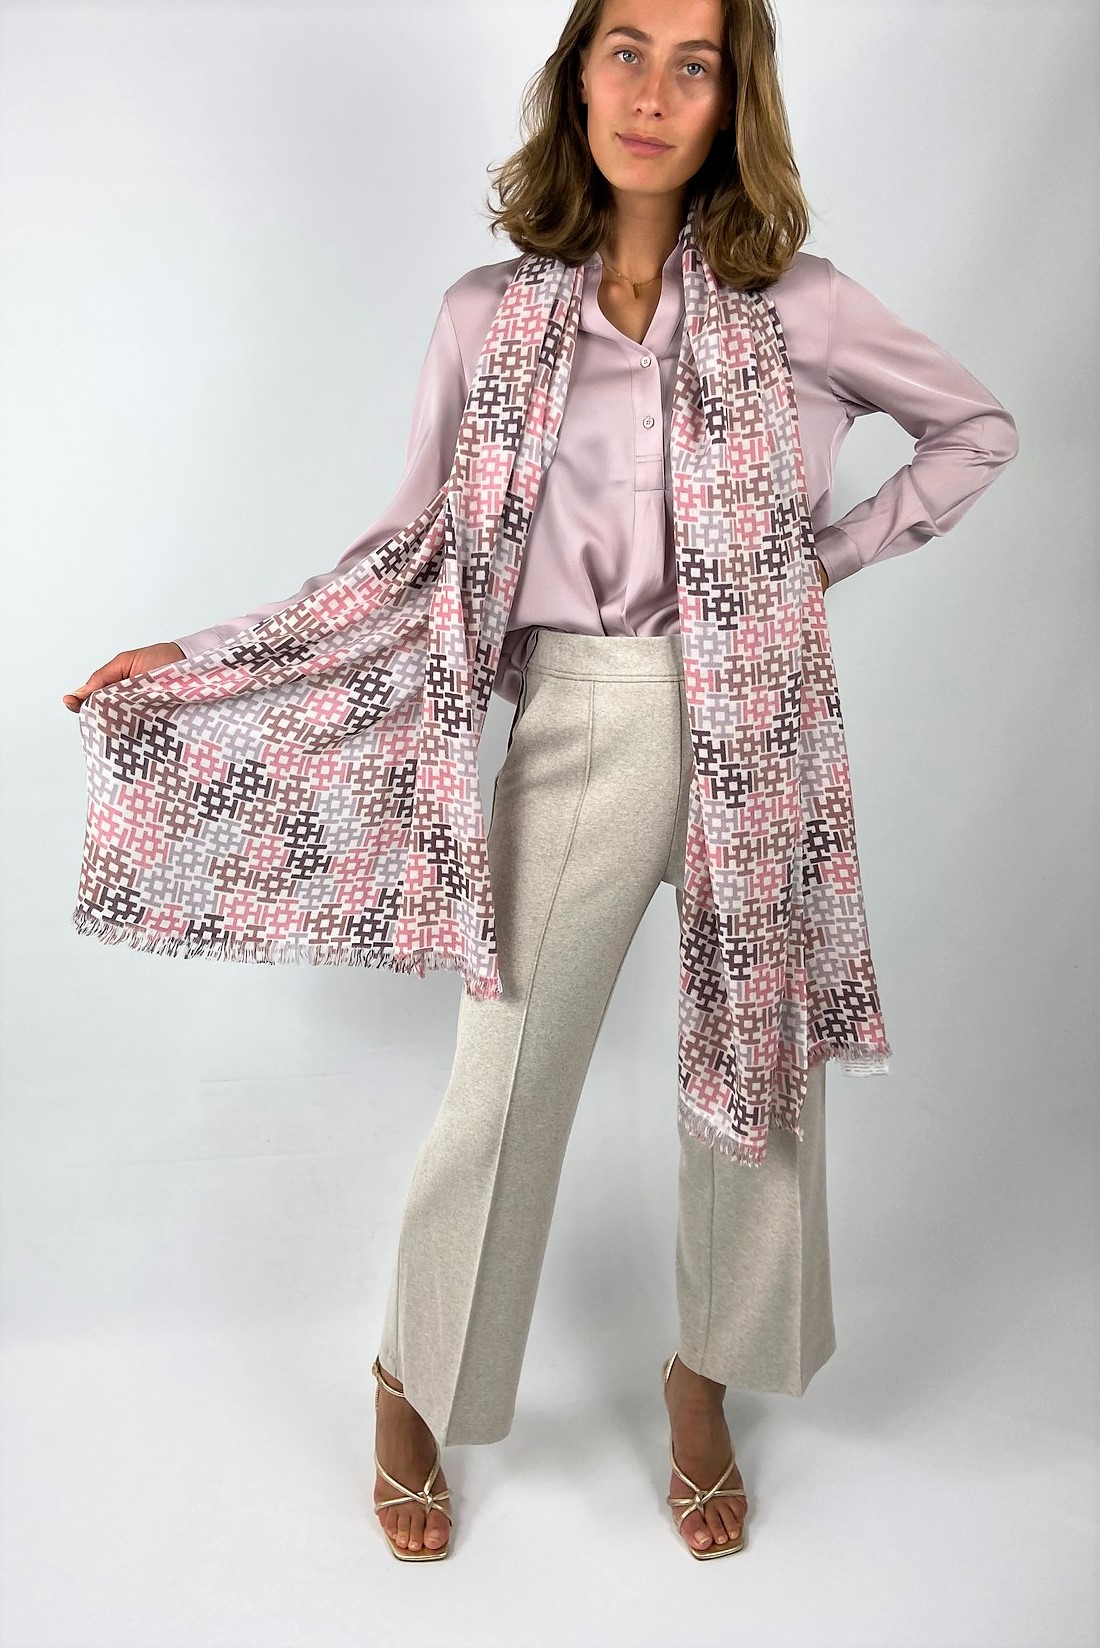 Sjaal H cashmere in de kleur ecru roze van het merk Hemisphere